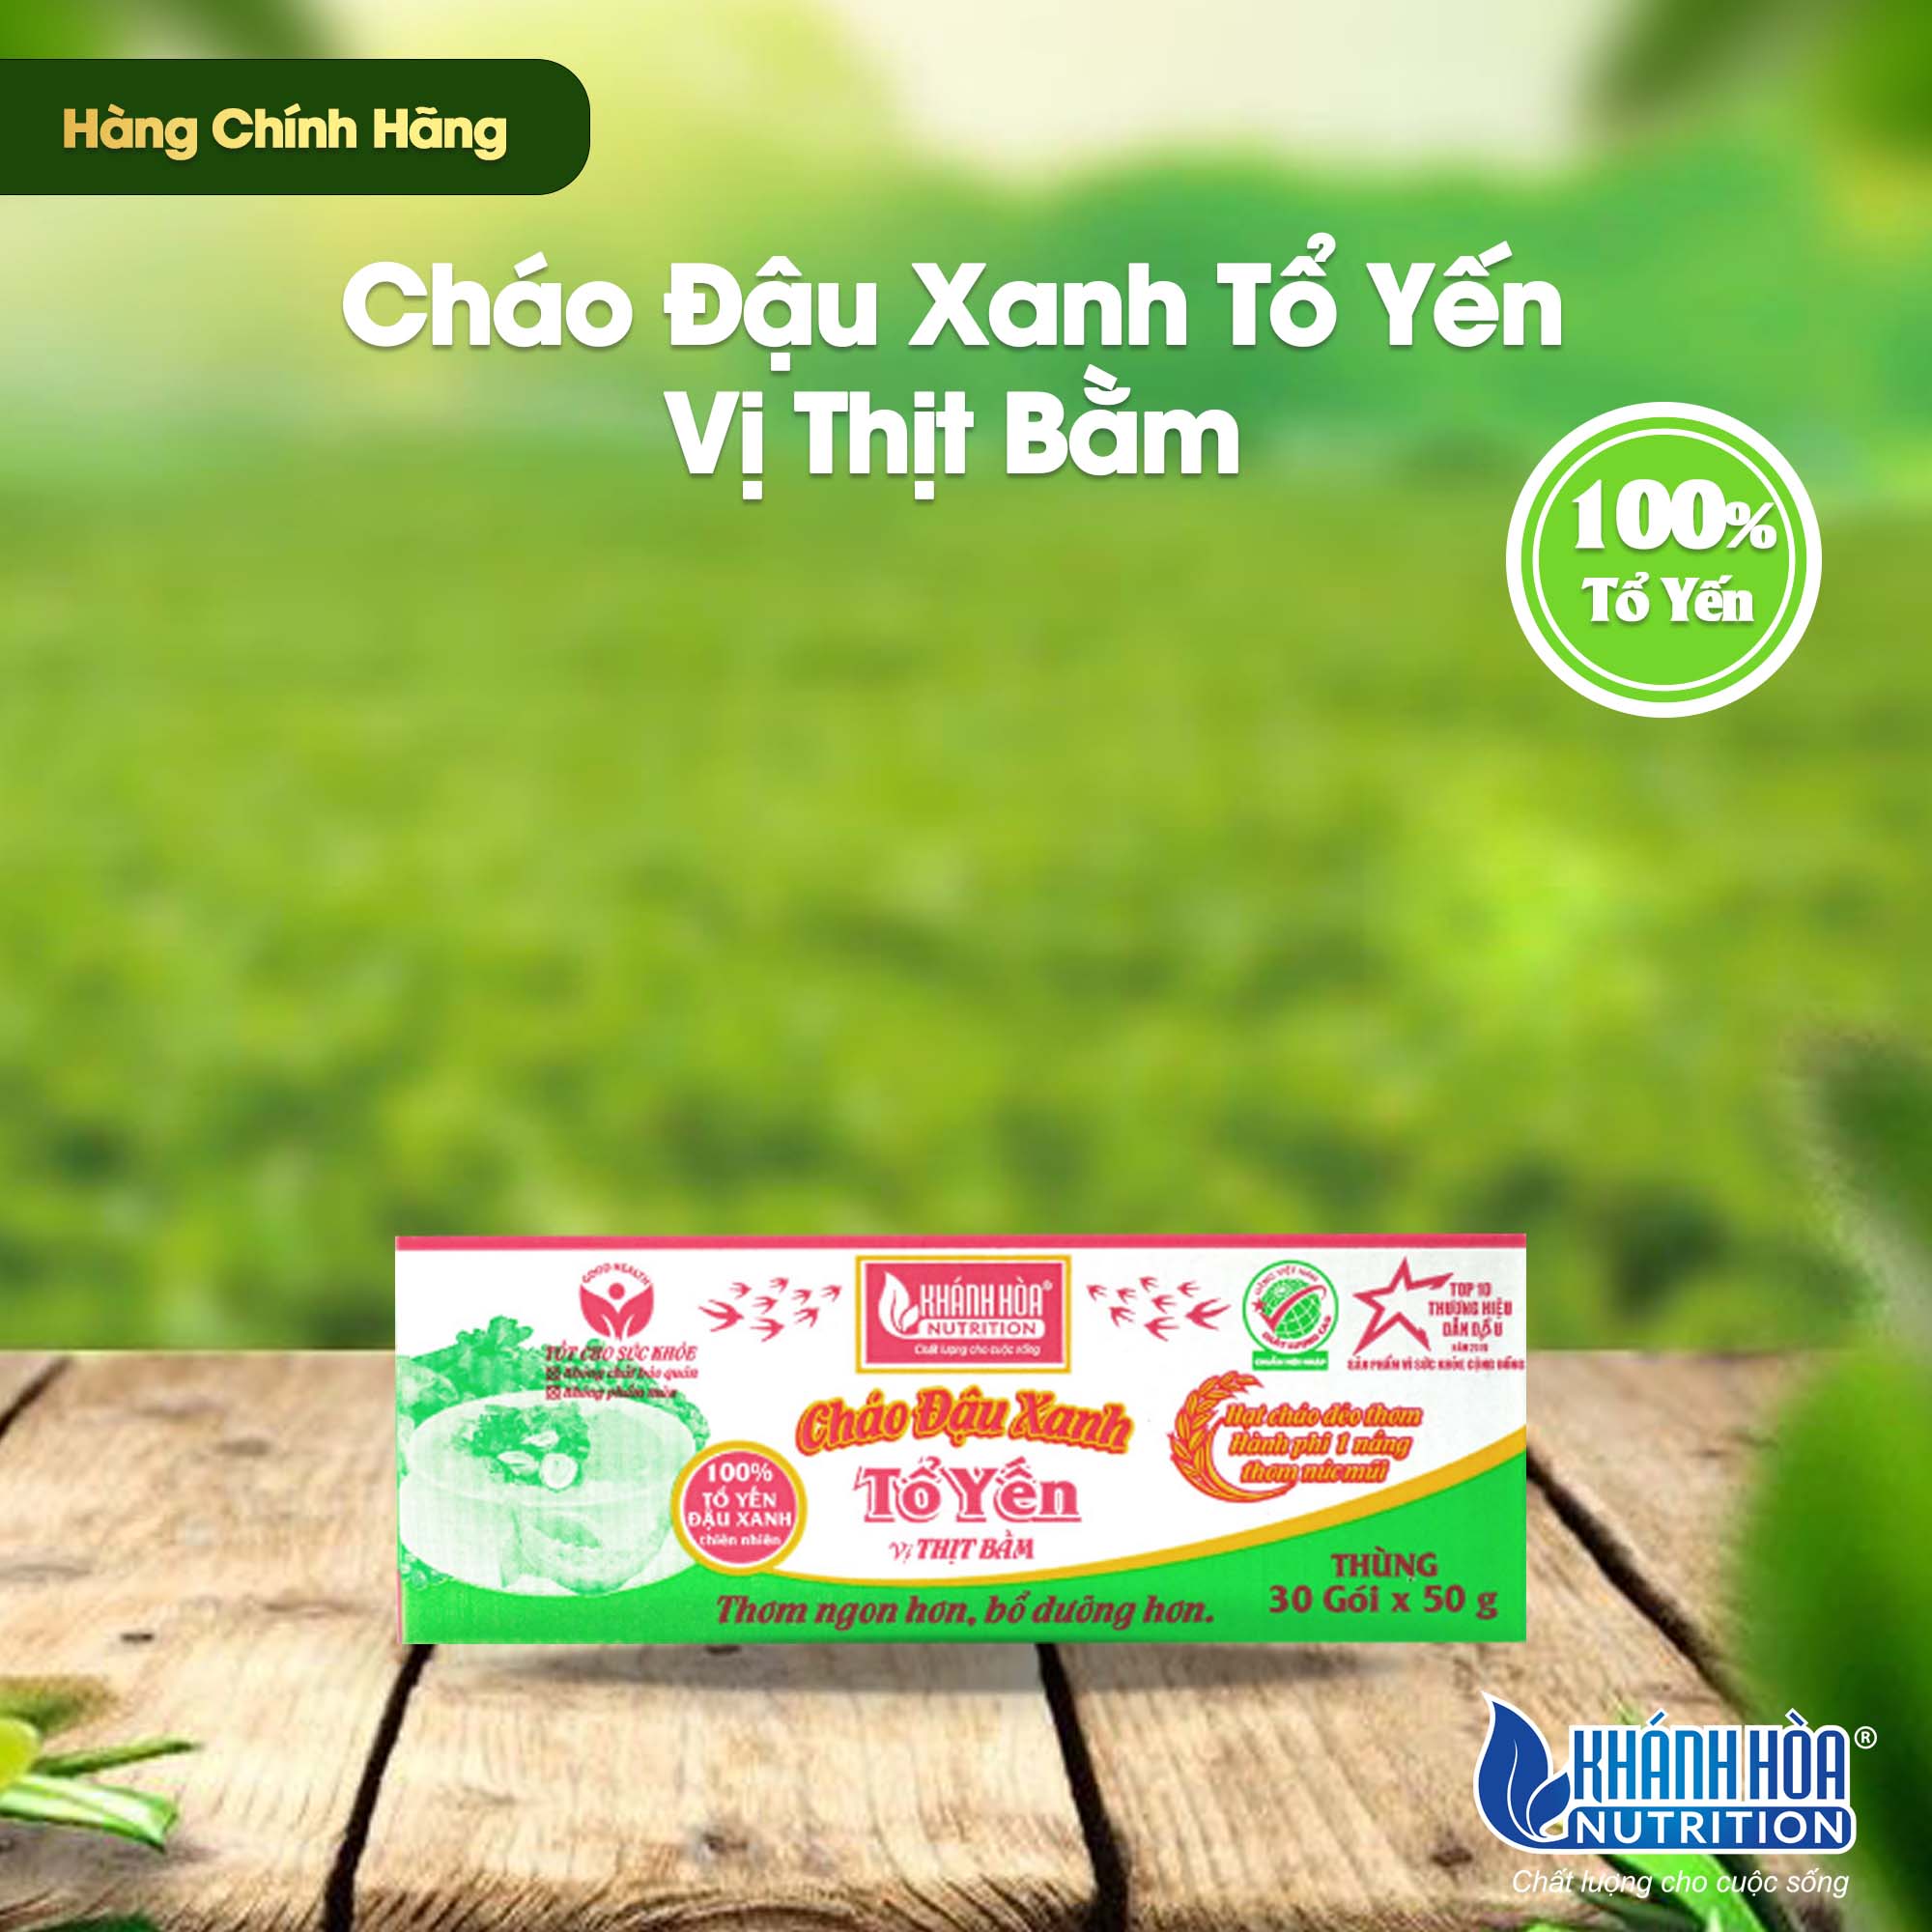 Cháo Tổ Yến Đậu Xanh Vị Thịt Bằm Khánh Hòa Nutrition - Thùng 30 gói x 50g